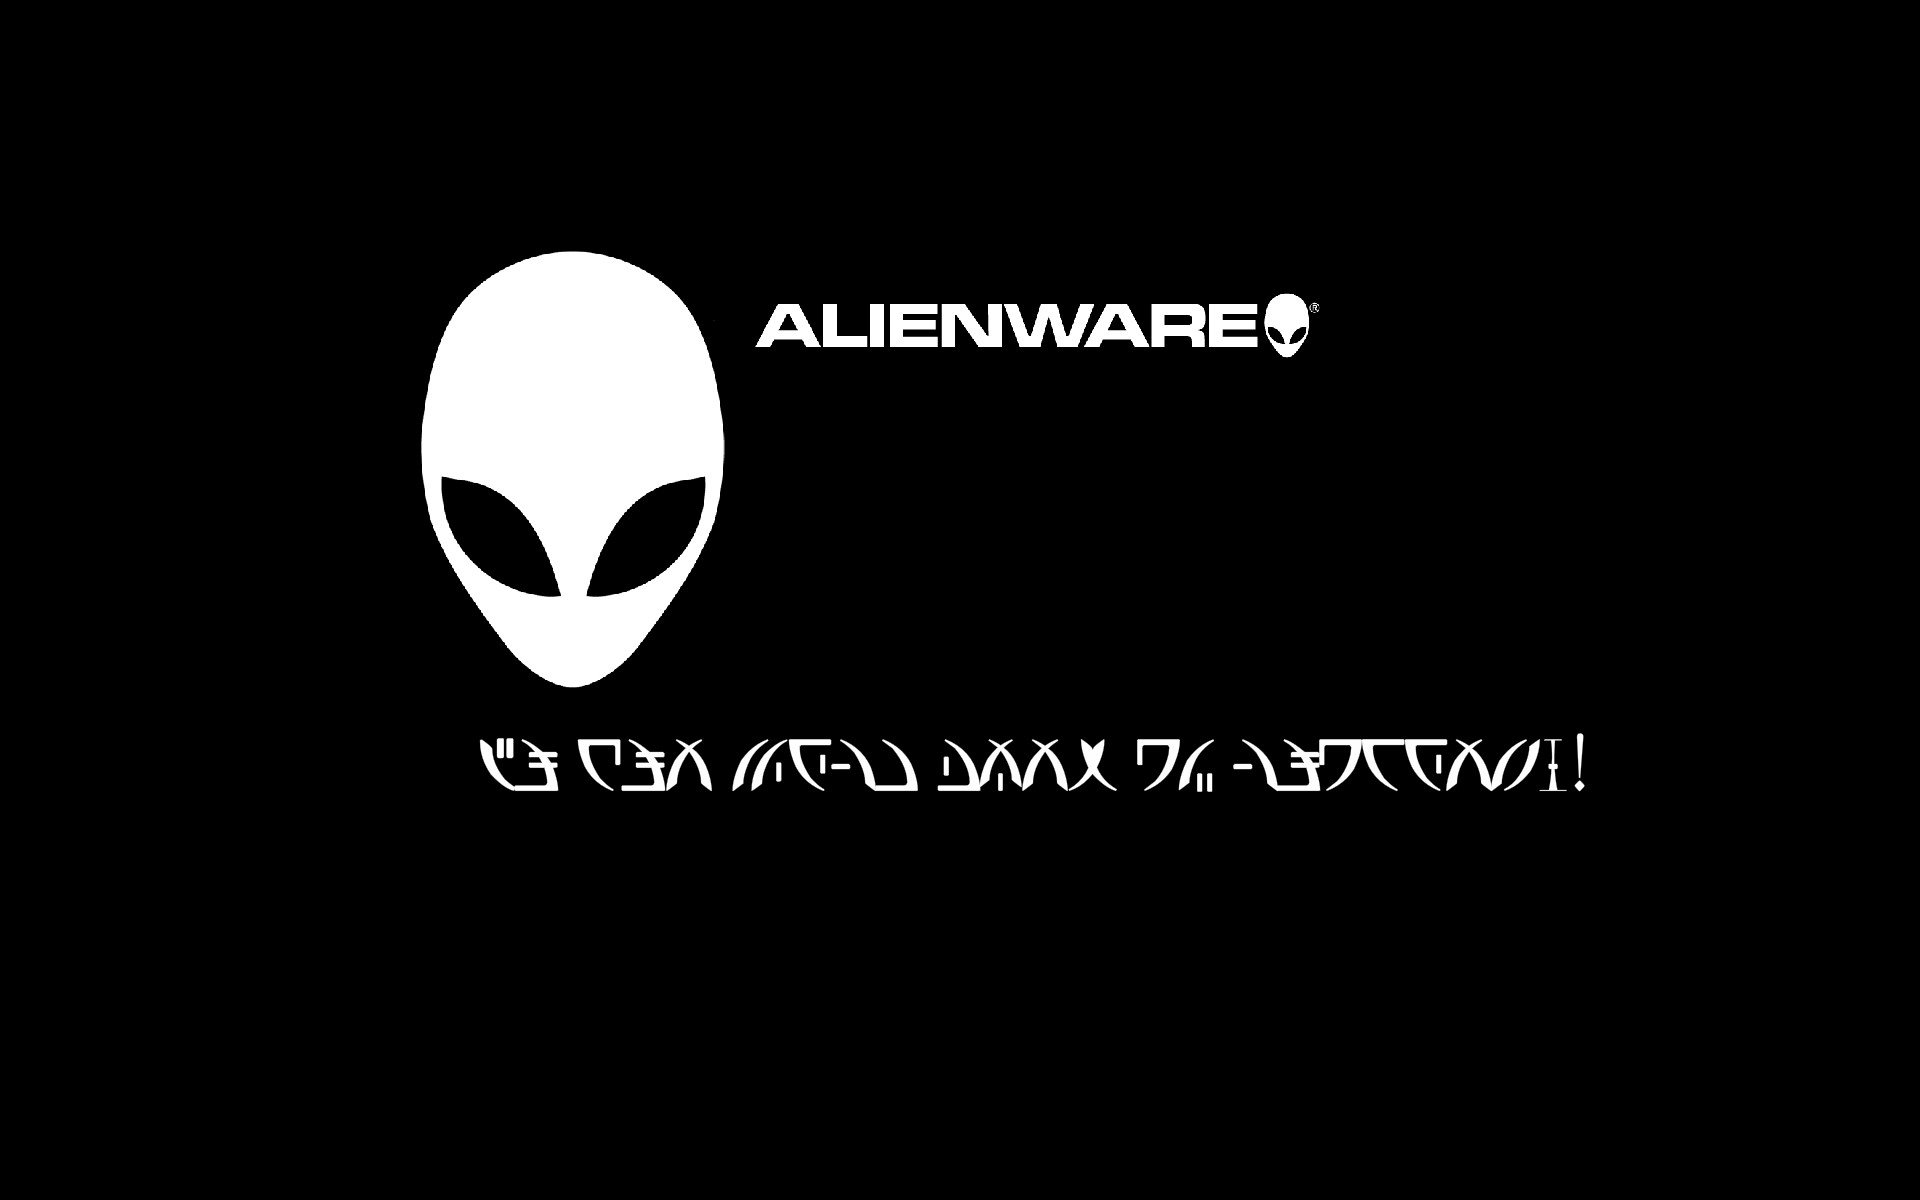 Dark Alienware Wallpapers